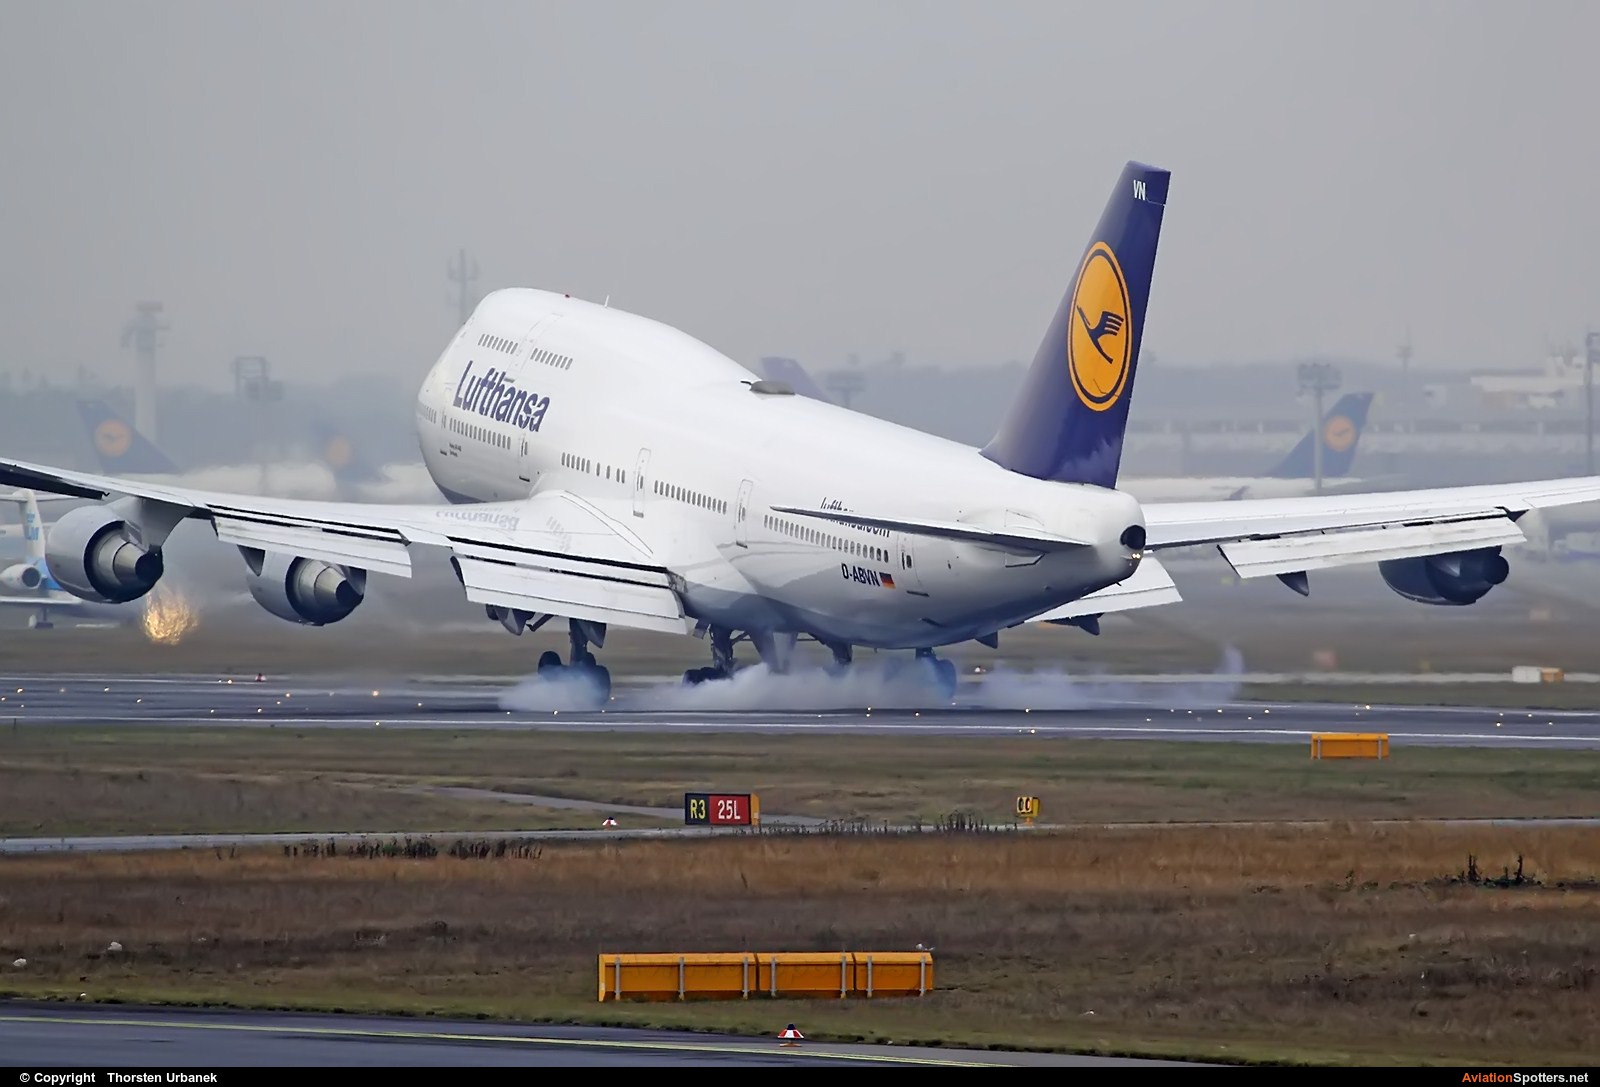 Lufthansa  -  747-400  (D-ABVN) By Thorsten Urbanek (toto1973)